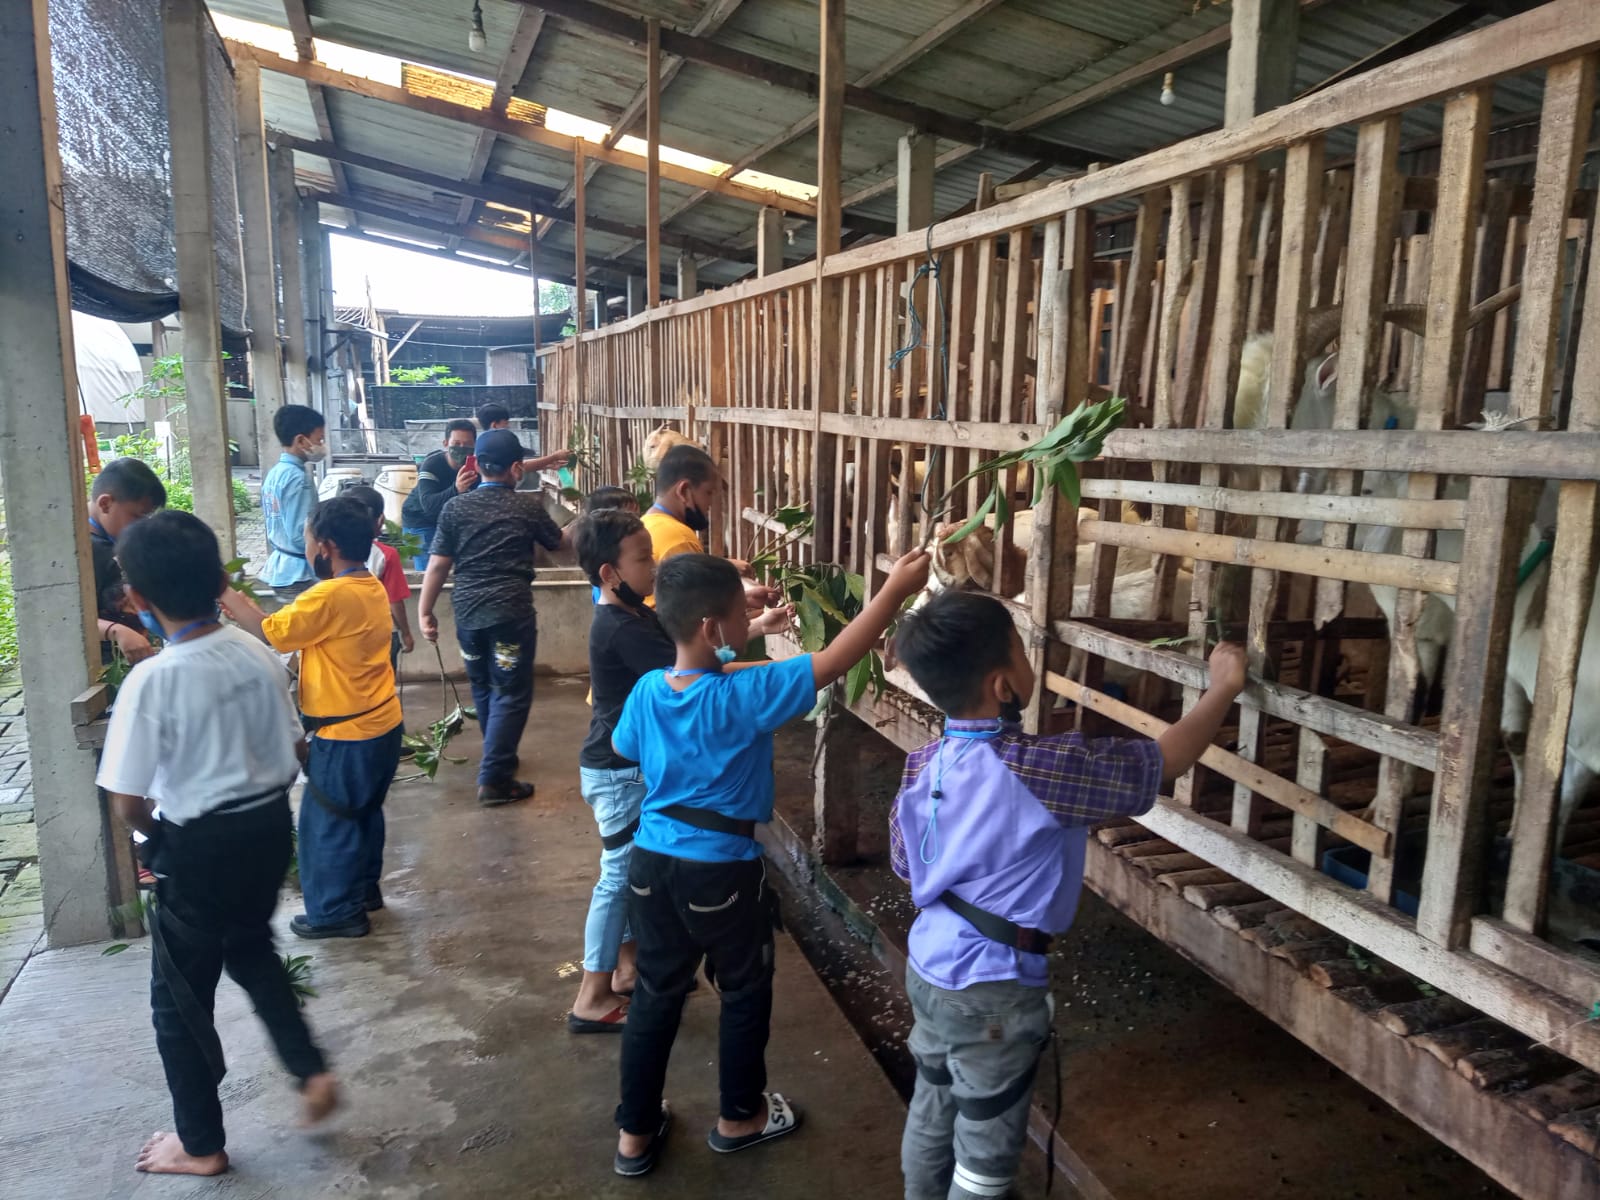 Gambar anak-anak sedang memberi makan hewan ternak di legok asri sidoarjo